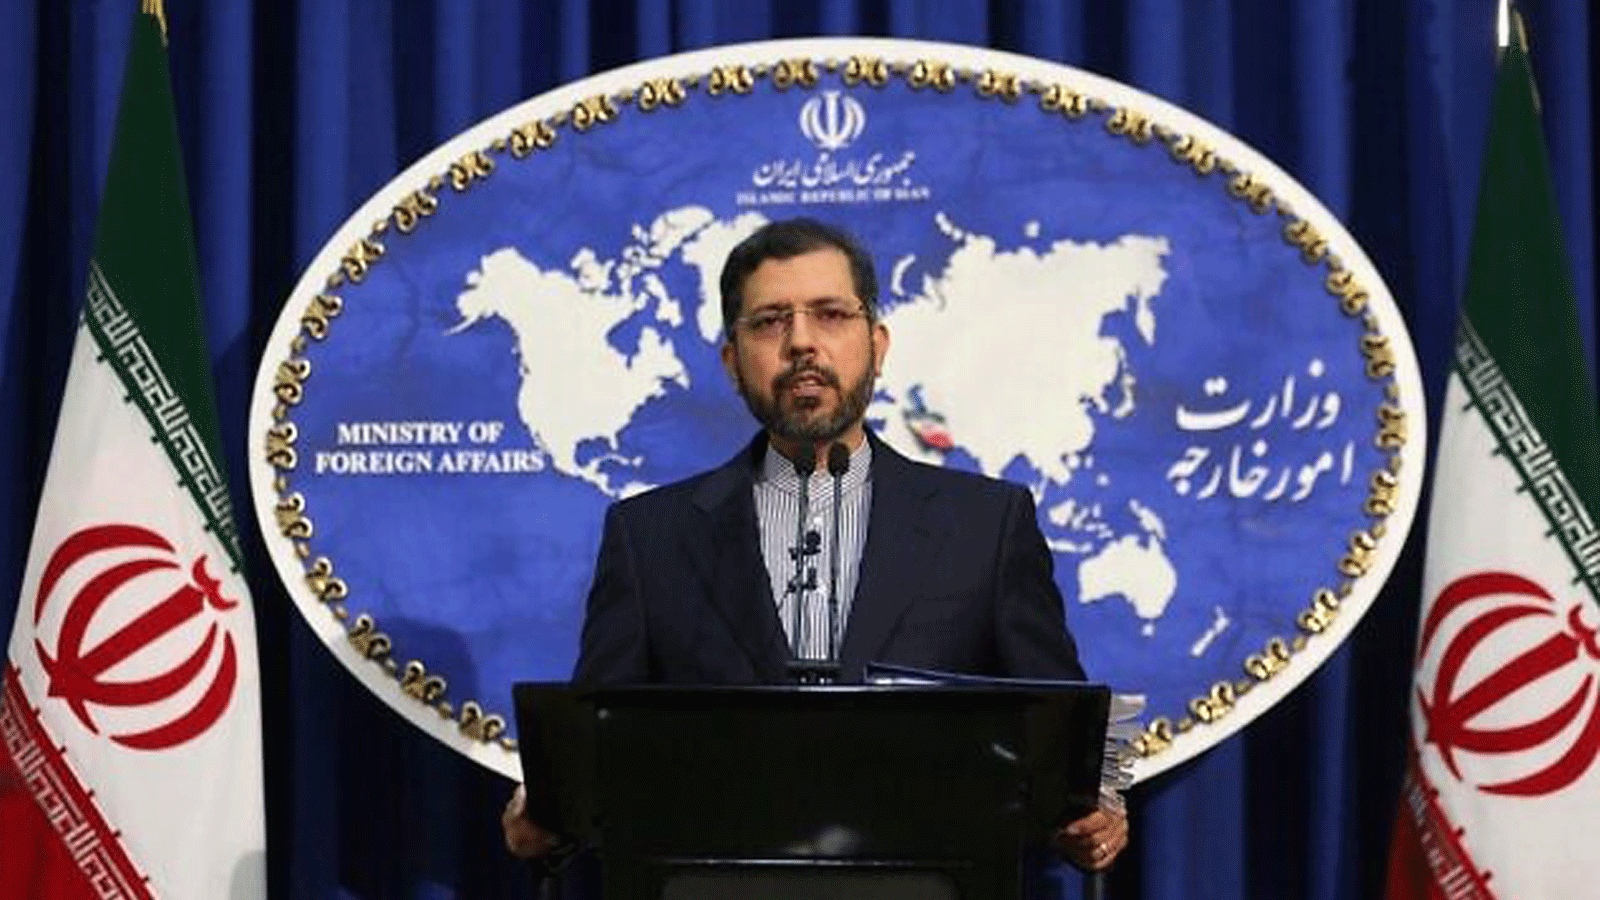 المتحدث باسم الخارجية الإيرانية سعيد خطيب زاده خلال مؤتمر صحفي في طهران